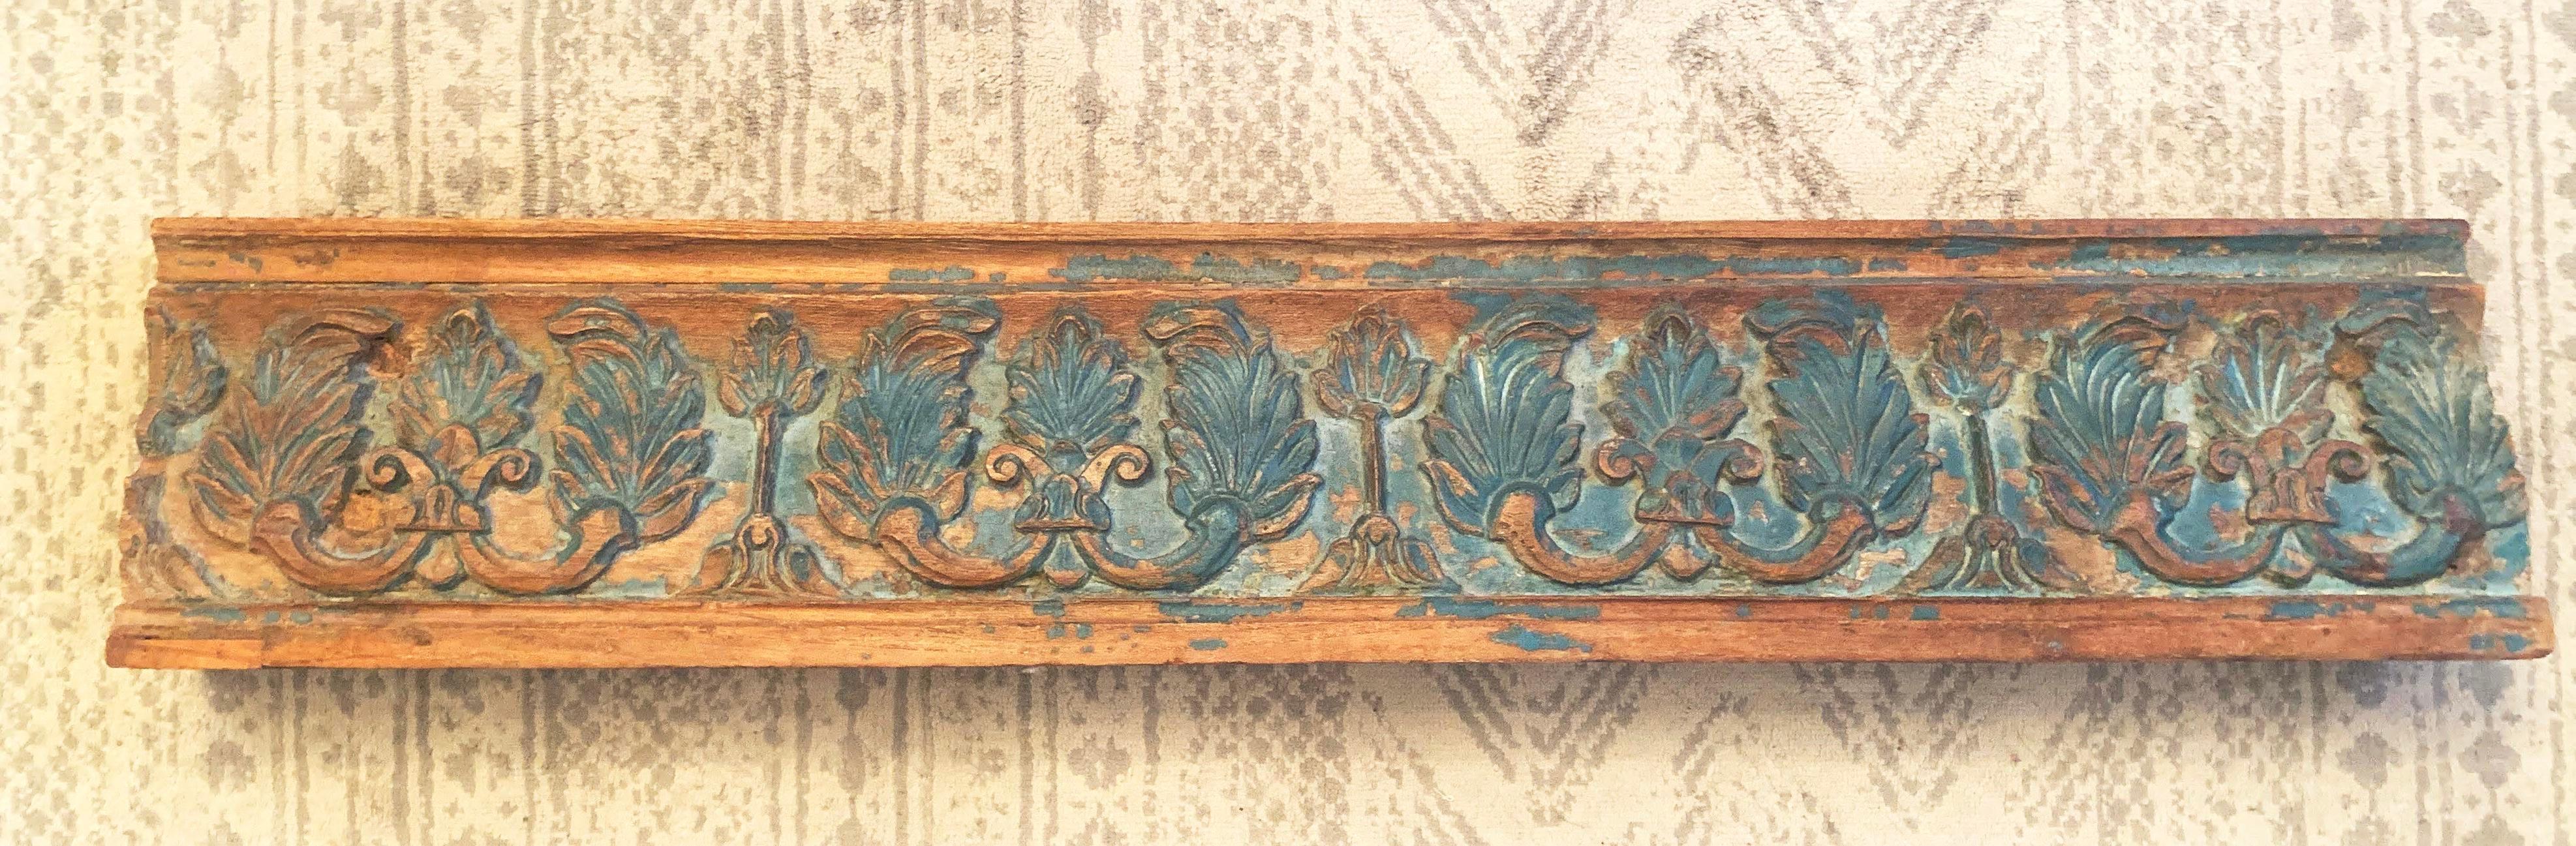 Ancienne sculpture de poutre de porte de temple en bois de rose indien avec peinture verte en relief, vers 1900. Fabriqué en bois de rose massif. L'épaisse peinture verte s'est décolorée et écaillée à de nombreux endroits, révélant les sculptures et